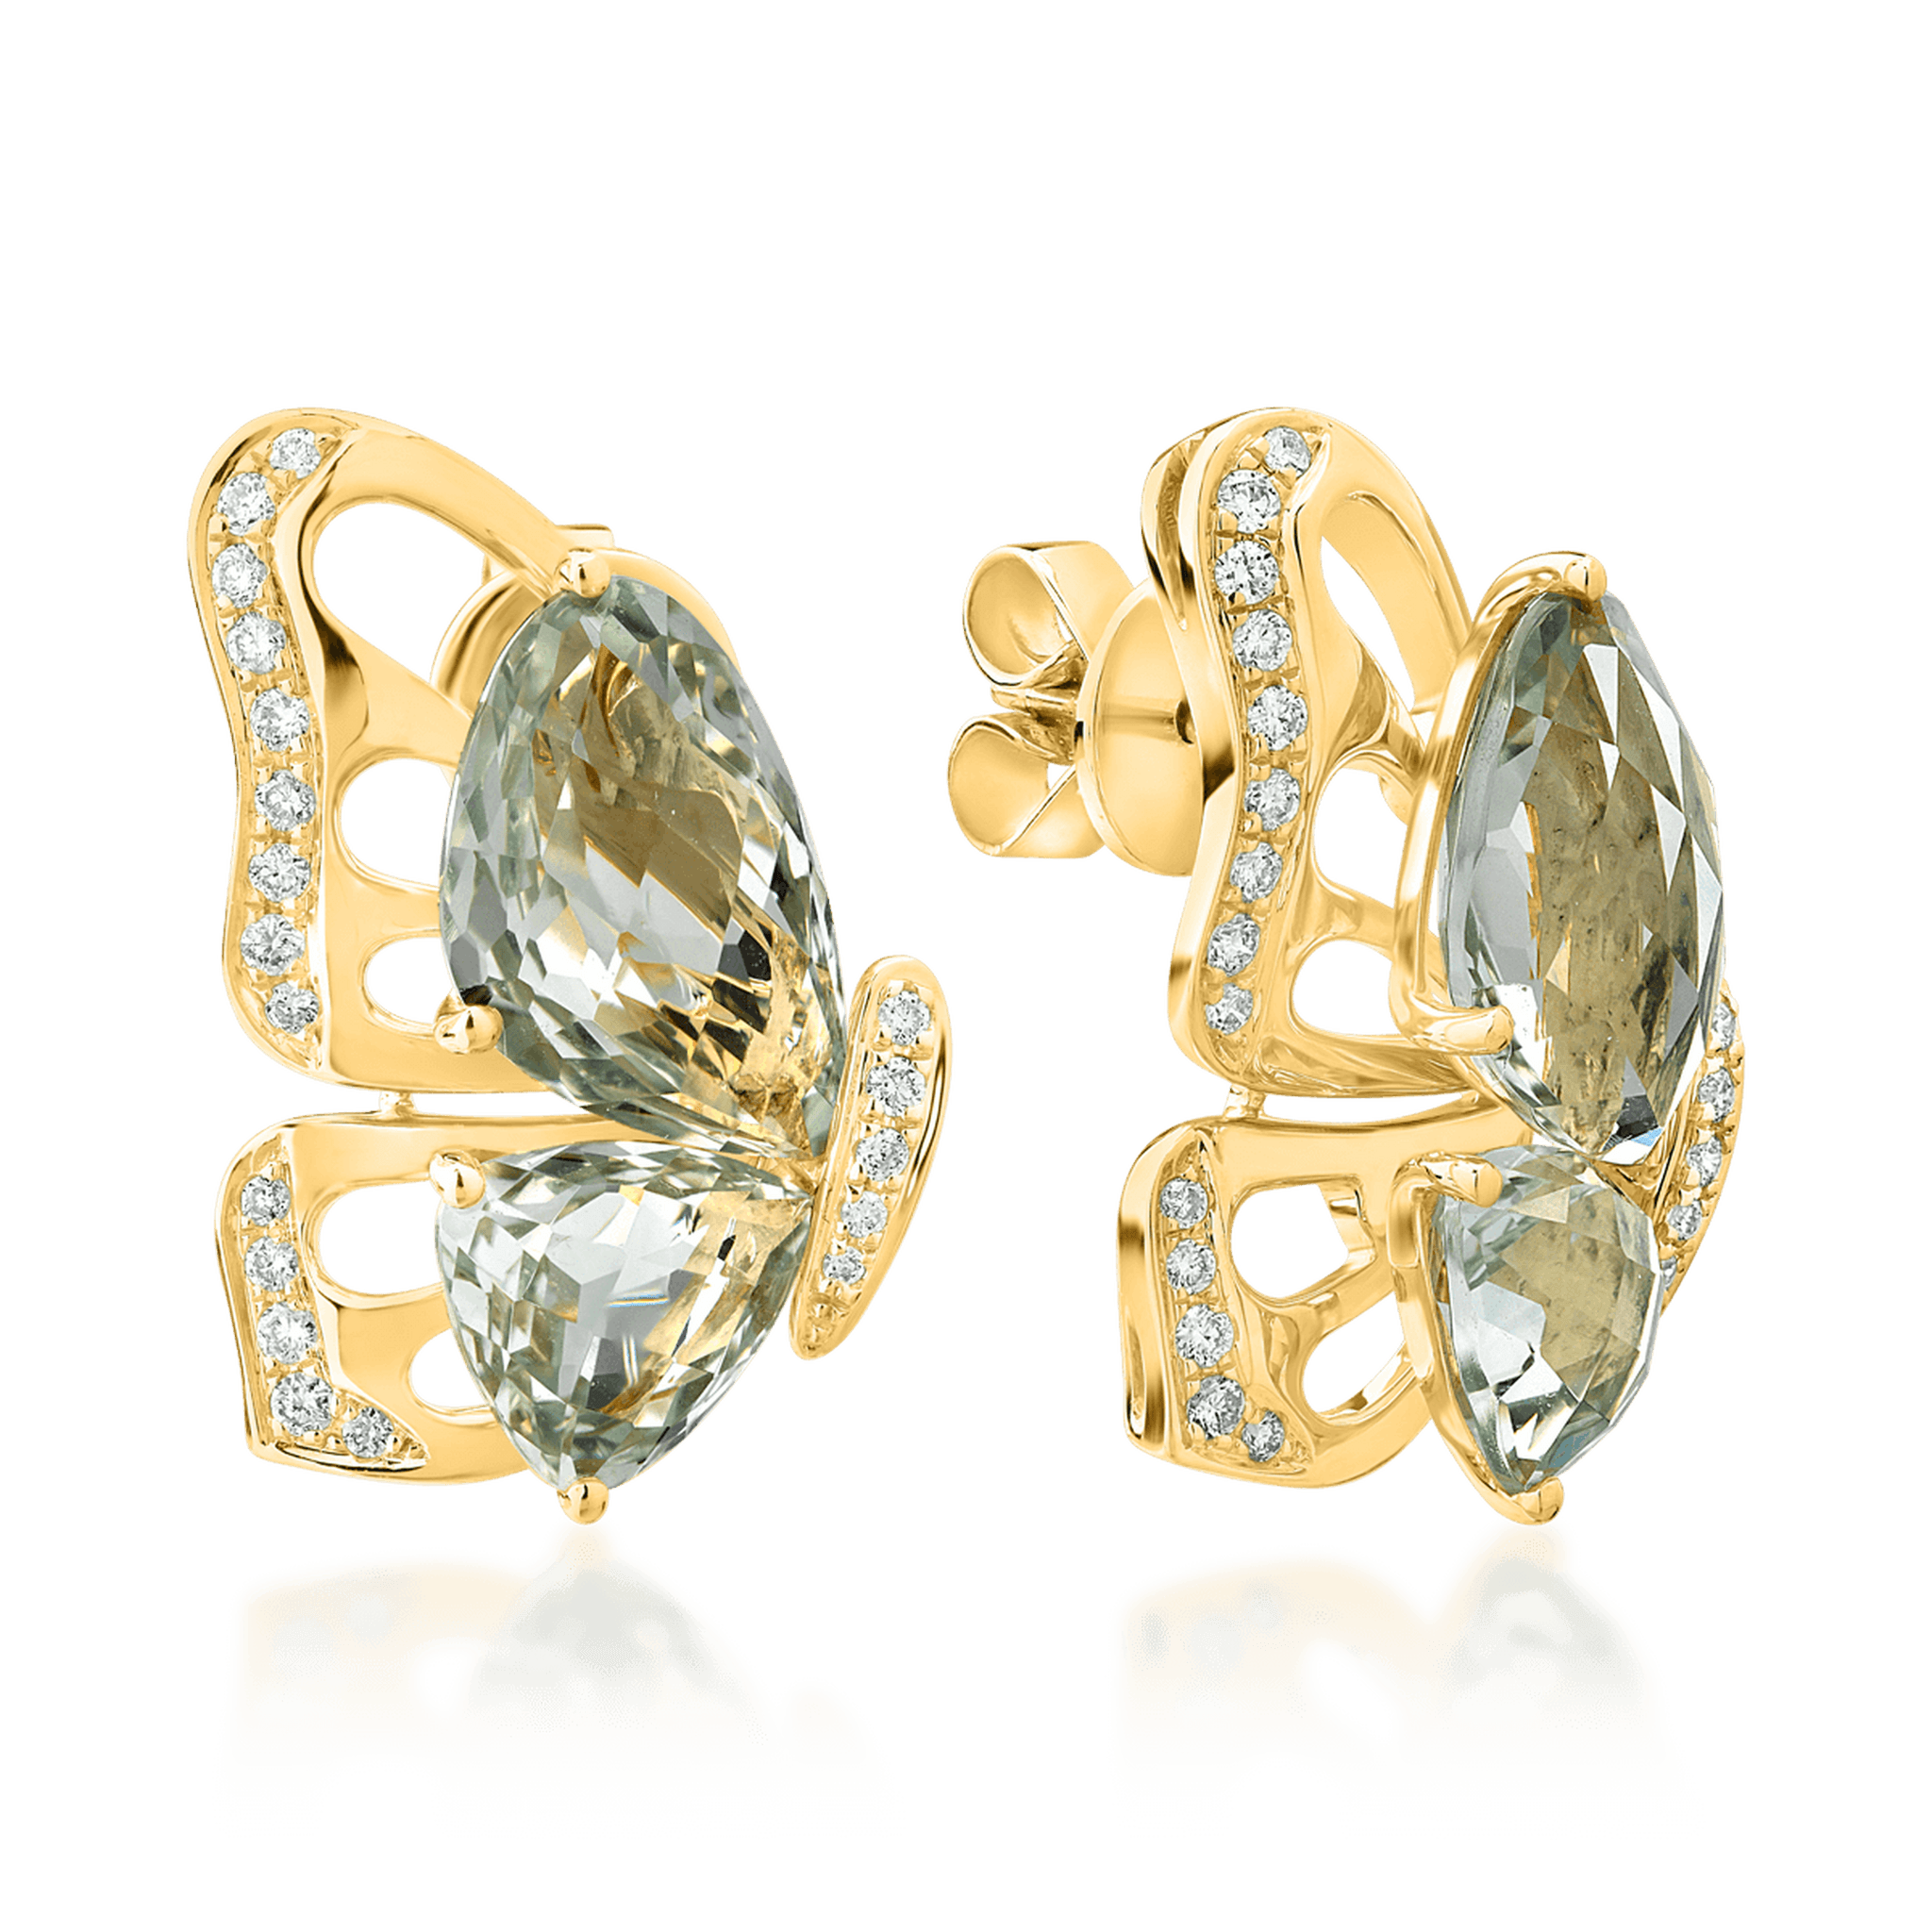 Cercei fluture din aur galben de 18K cu ametiste verzi de 7.7ct si diamante de 0.28ct